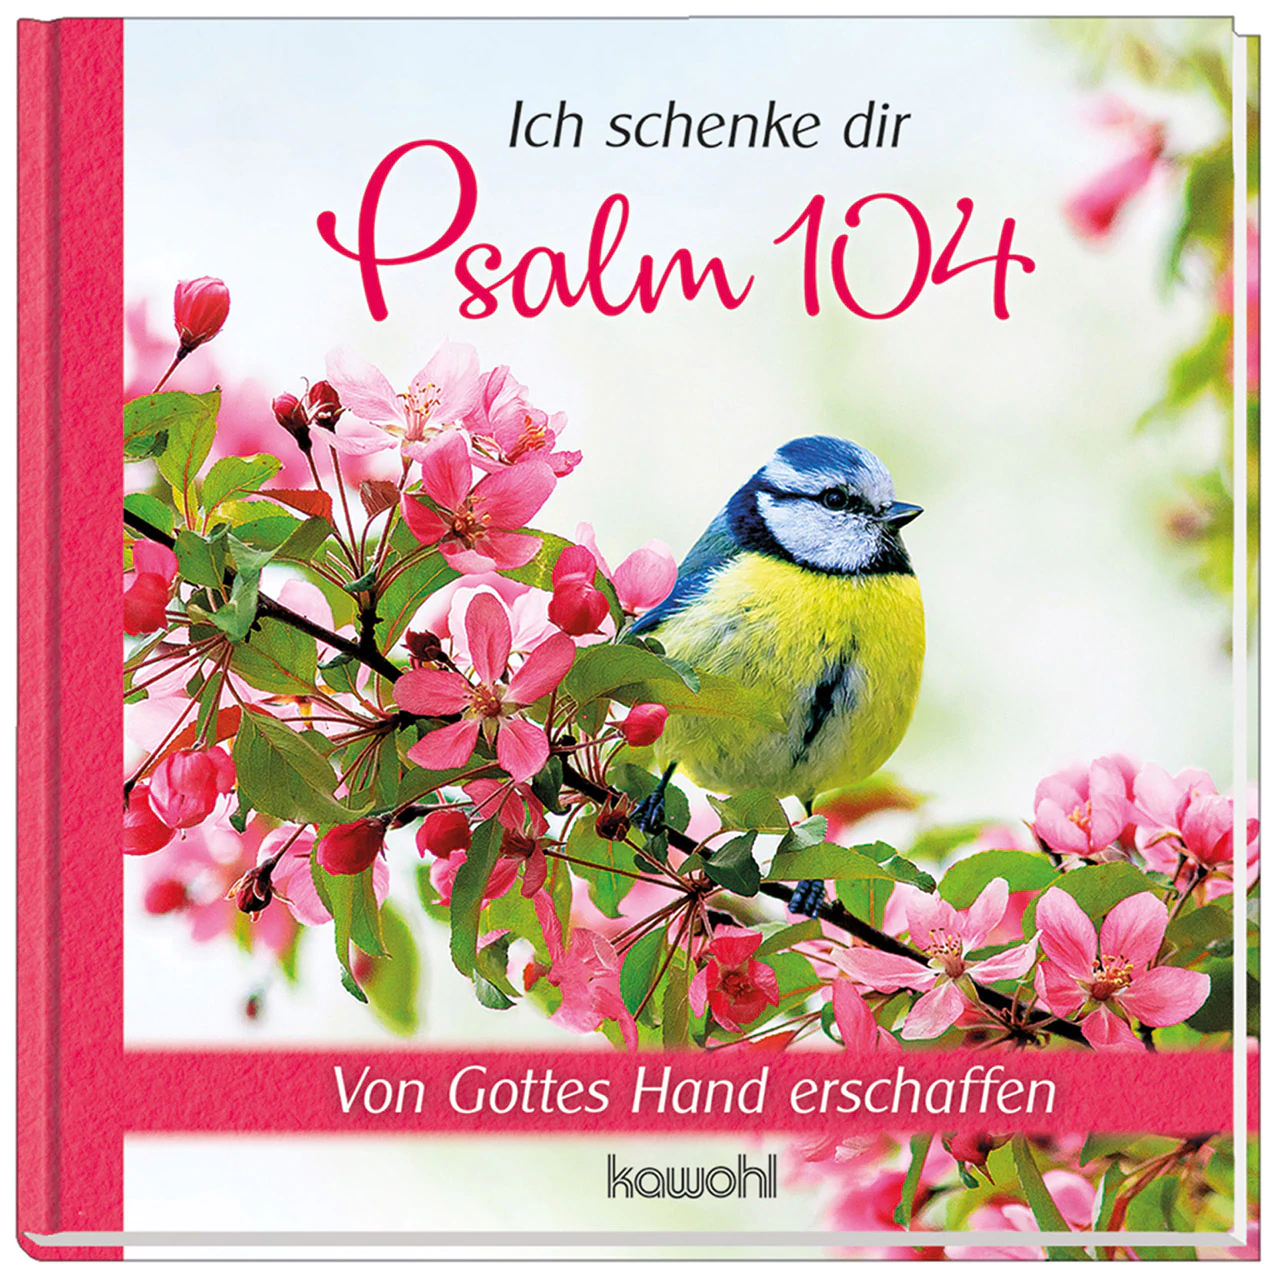 Ich schenke dir Psalm 104 - Von Gottes Hand erschaffen